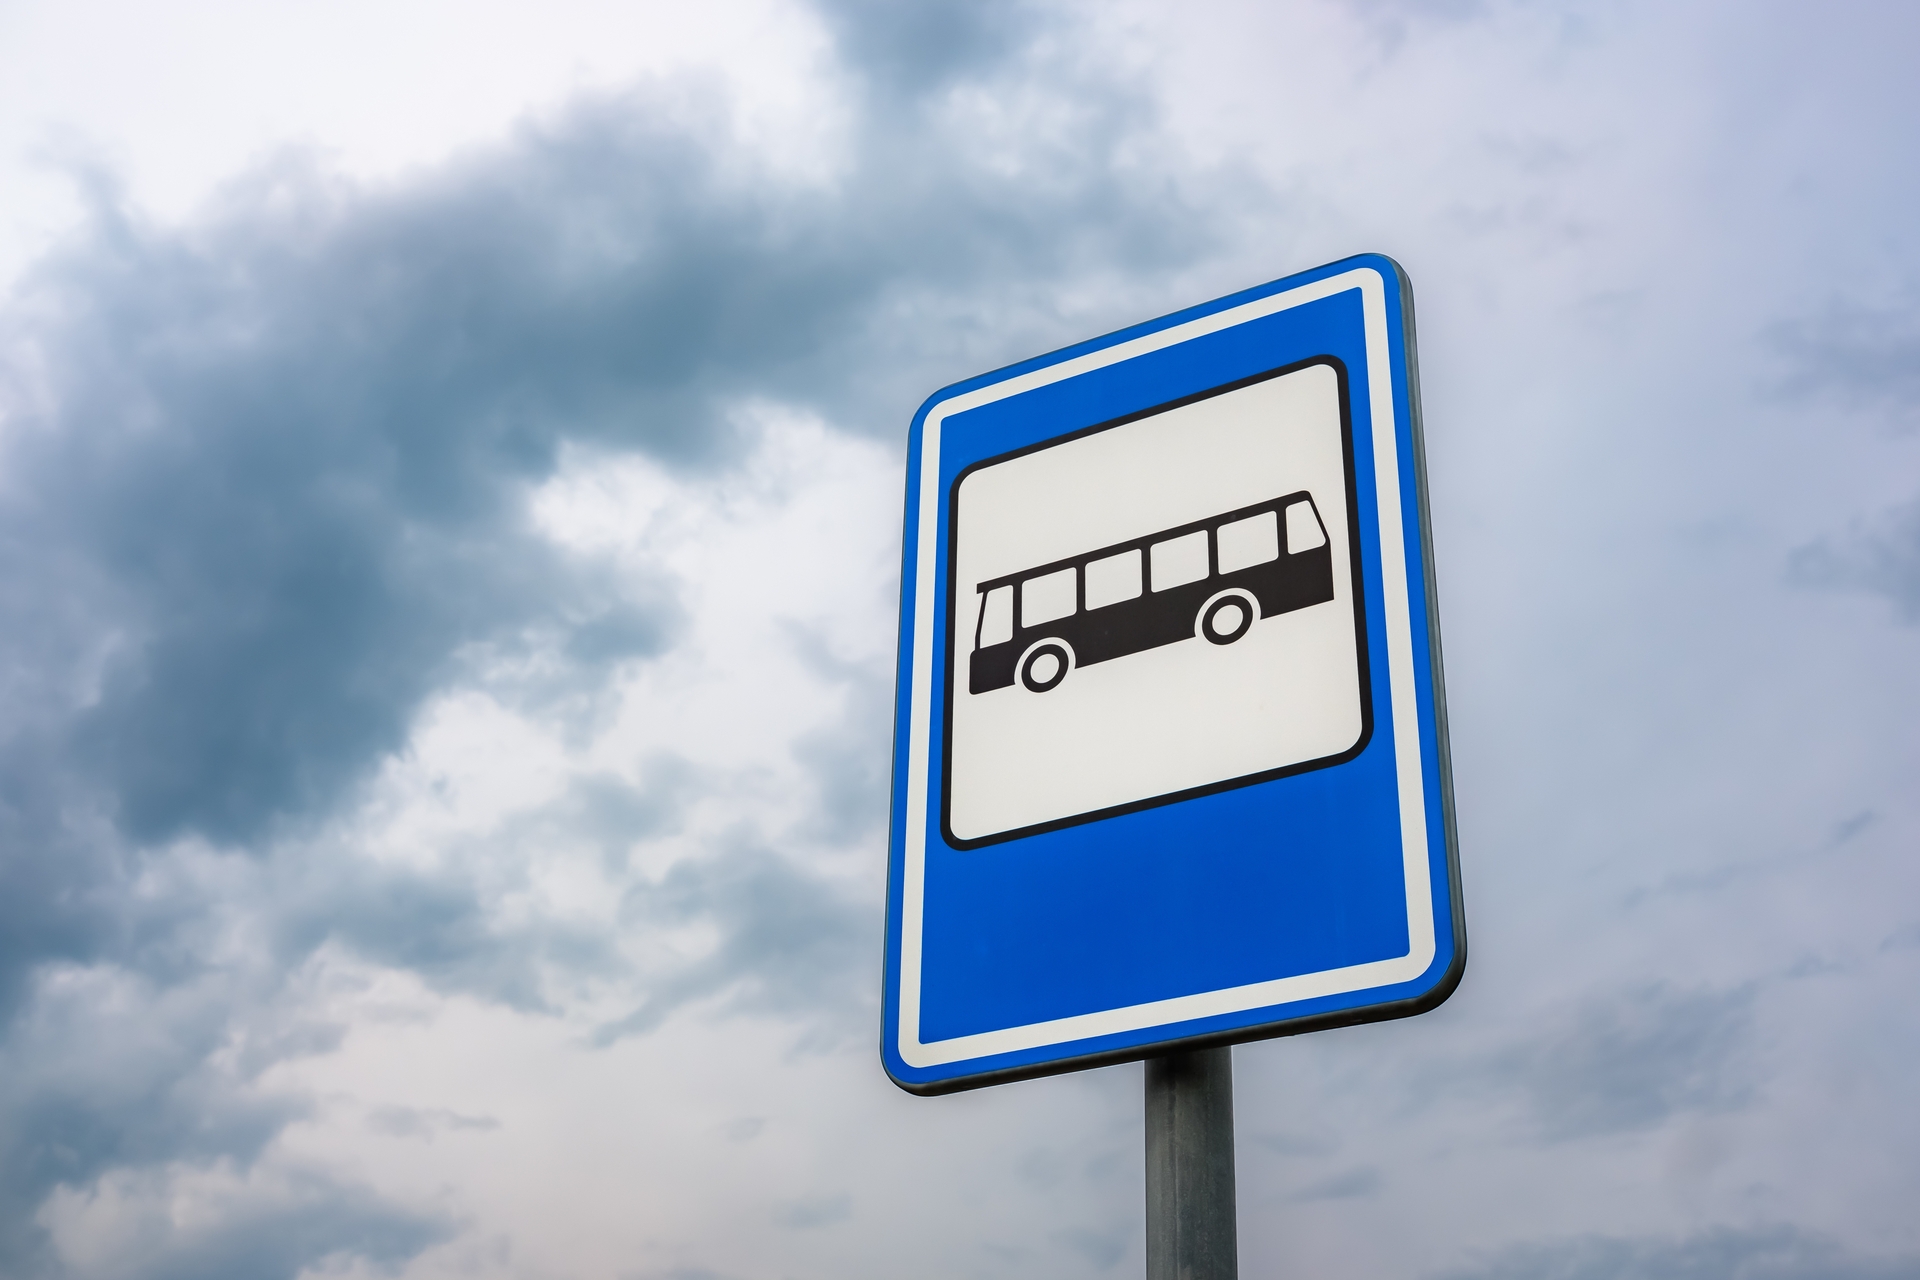 В Омске кондуктор чуть не выгнала школьника из автобуса из-за наклейки на проездном